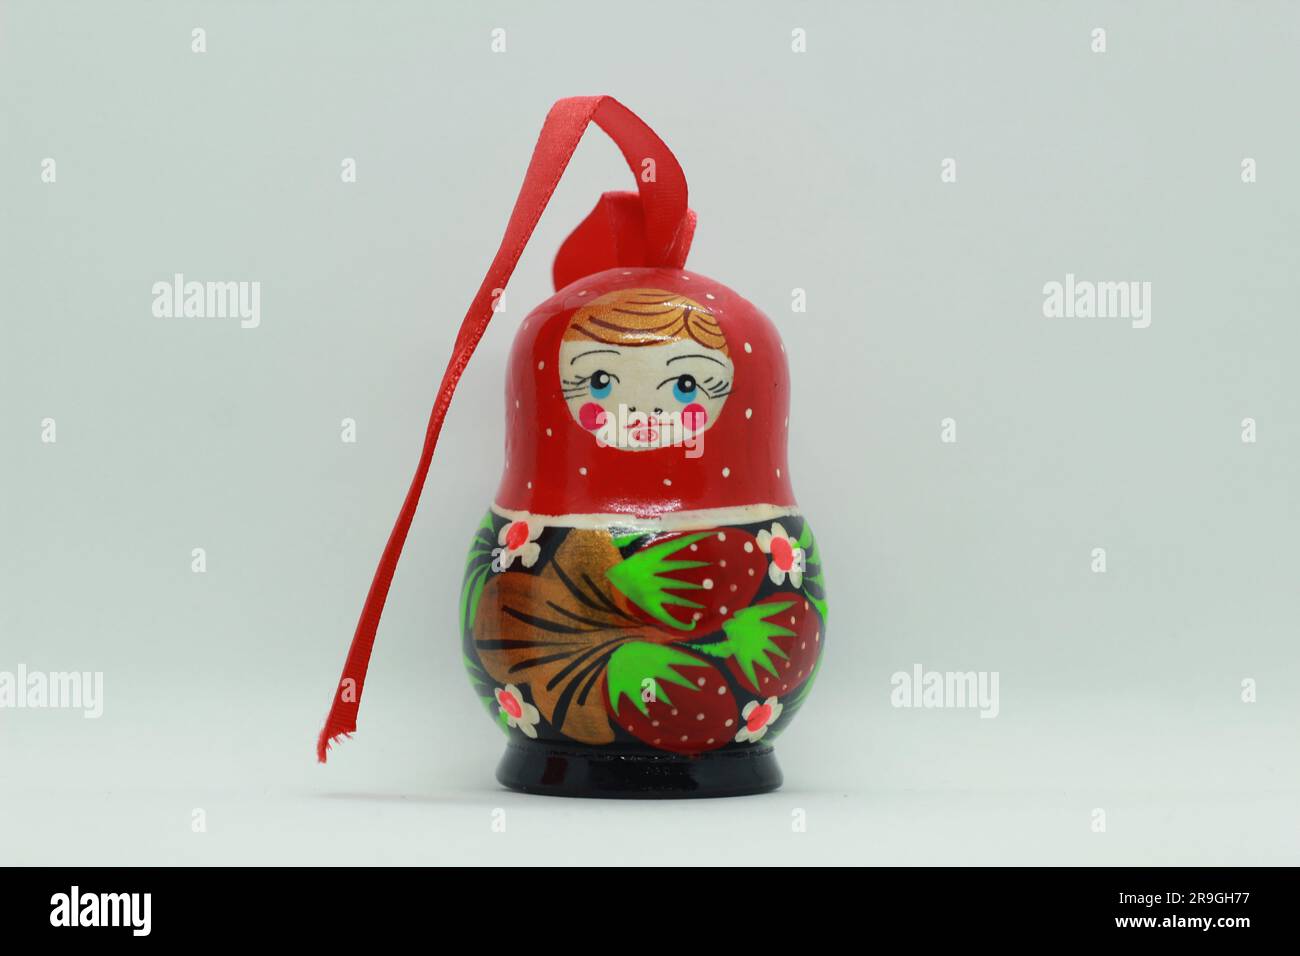 Matryoshka doll with ribbon Stock Photo